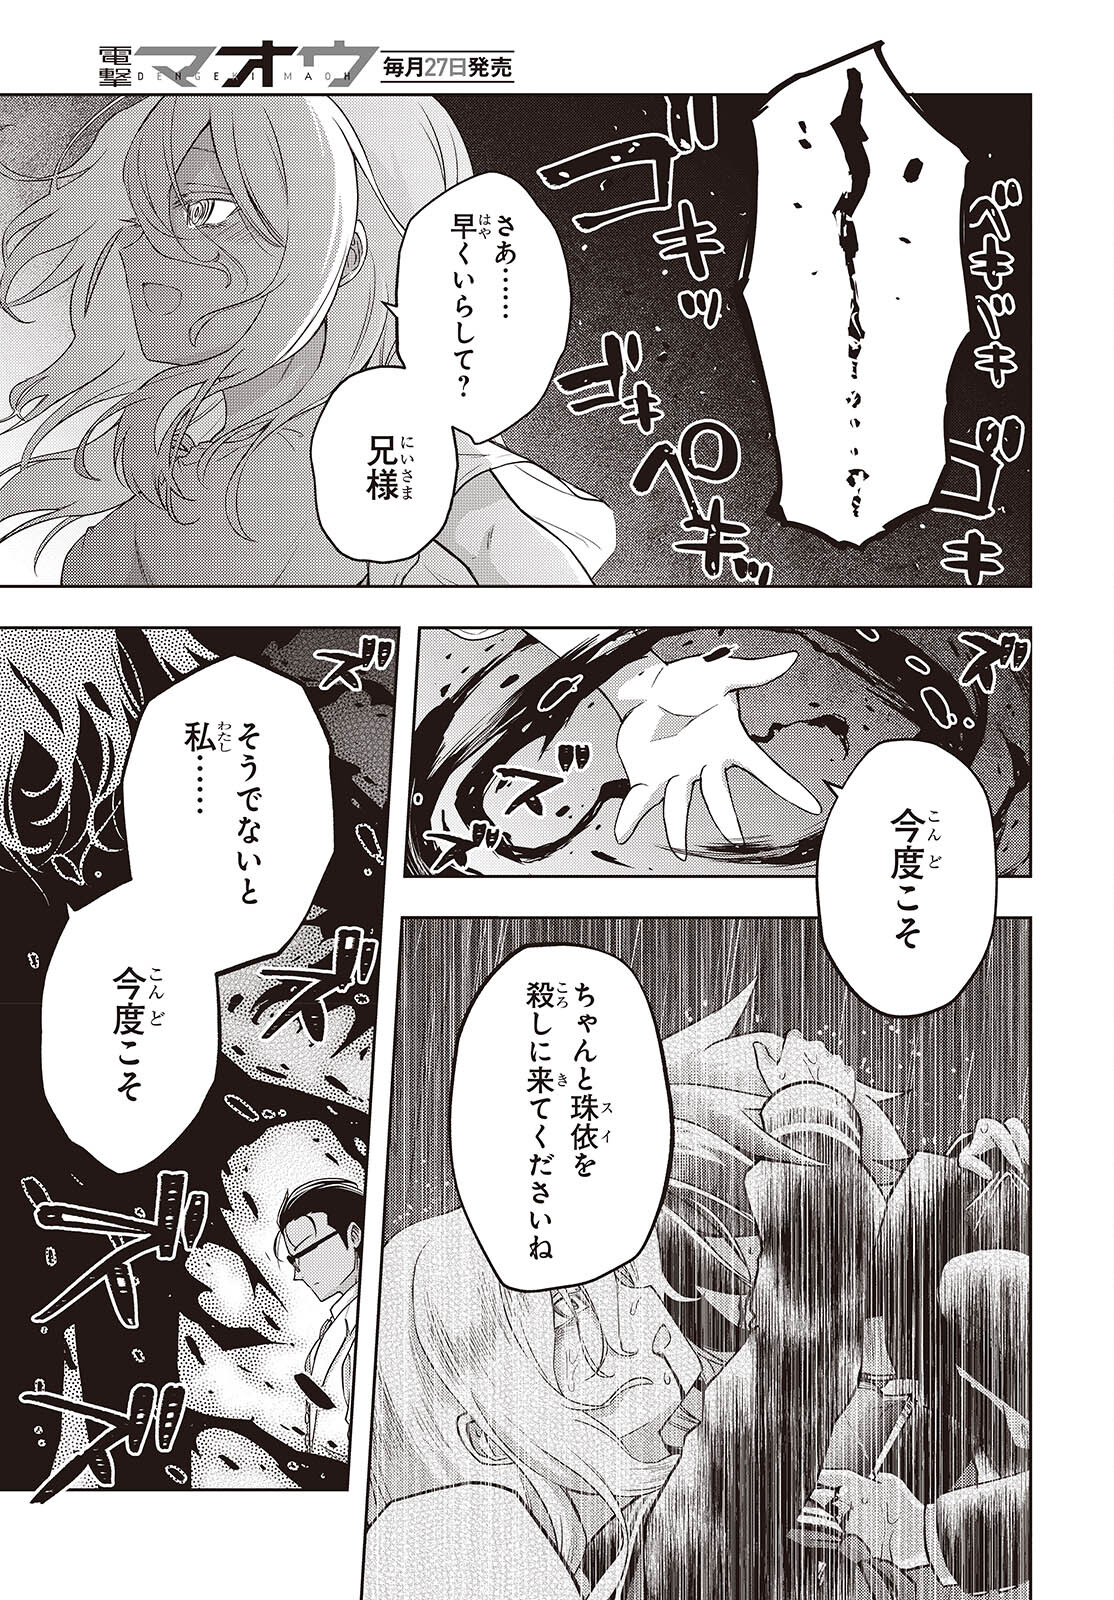 Utsuro Naru Regalia - Chapter 15 - Page 23